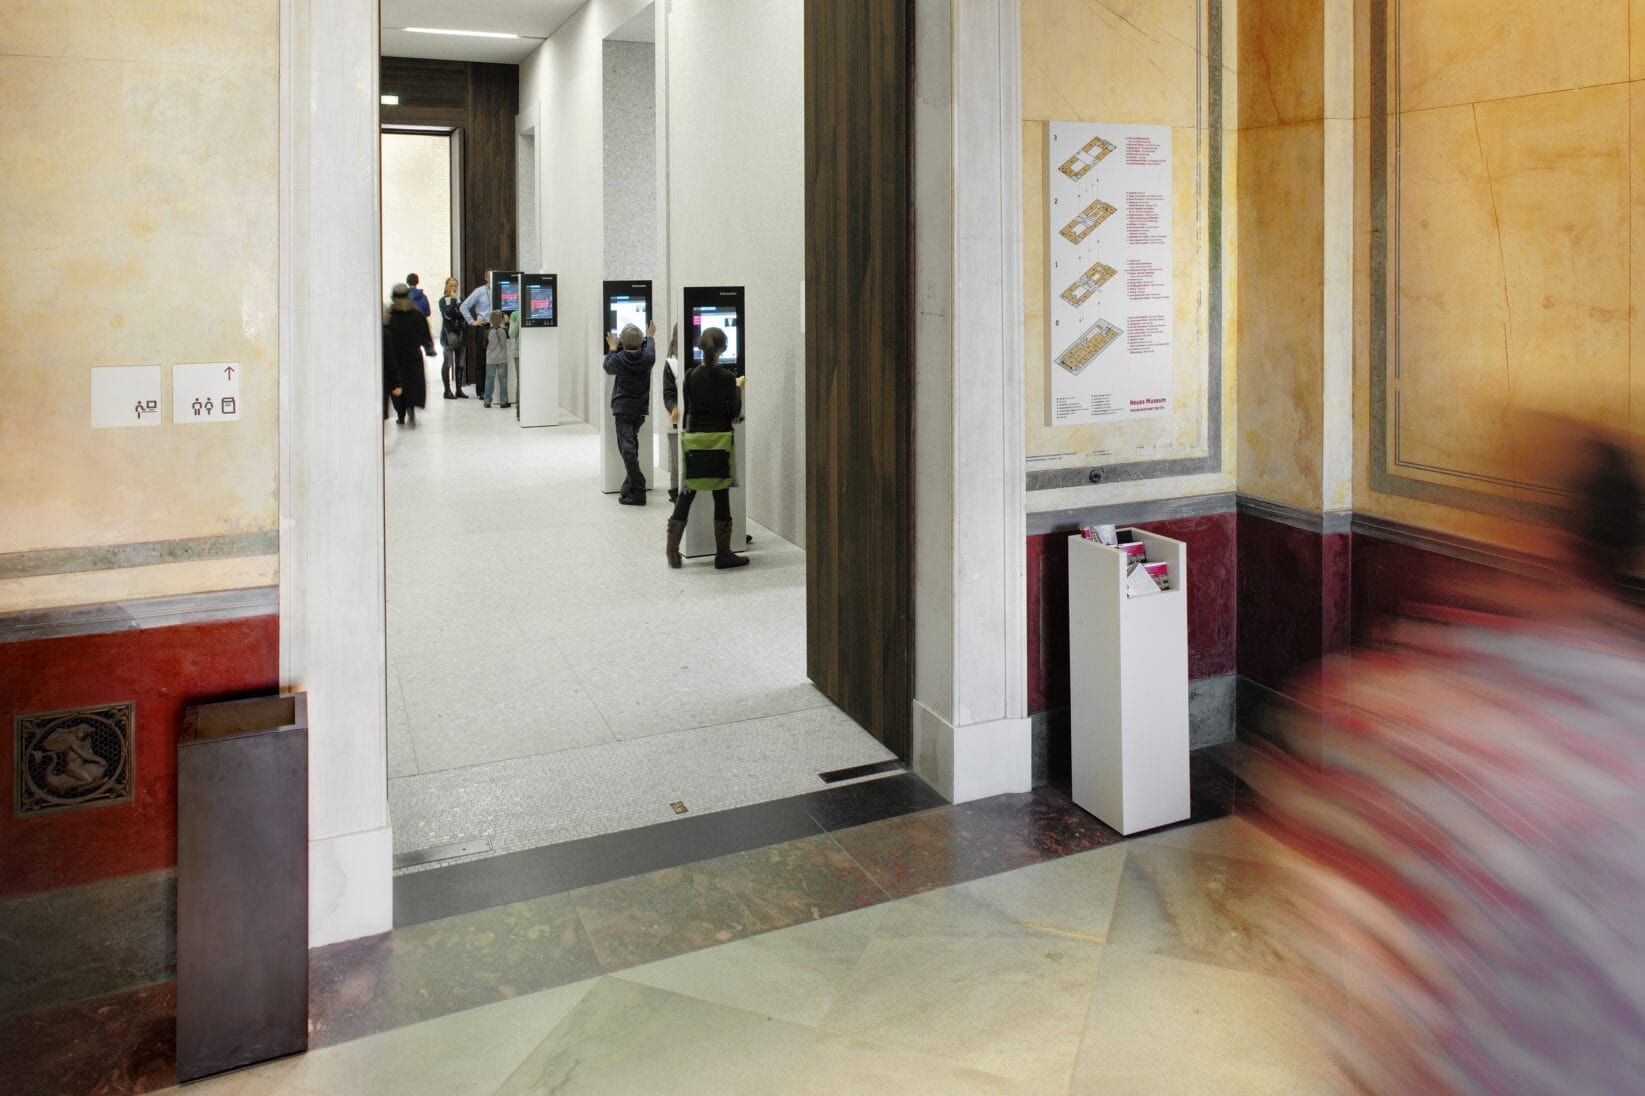 Museumsinsel Berlin NeuesMuseum Leitsystem Signaletik Gesamtkonzept Innenraum Wegweiser Orientierungsplan